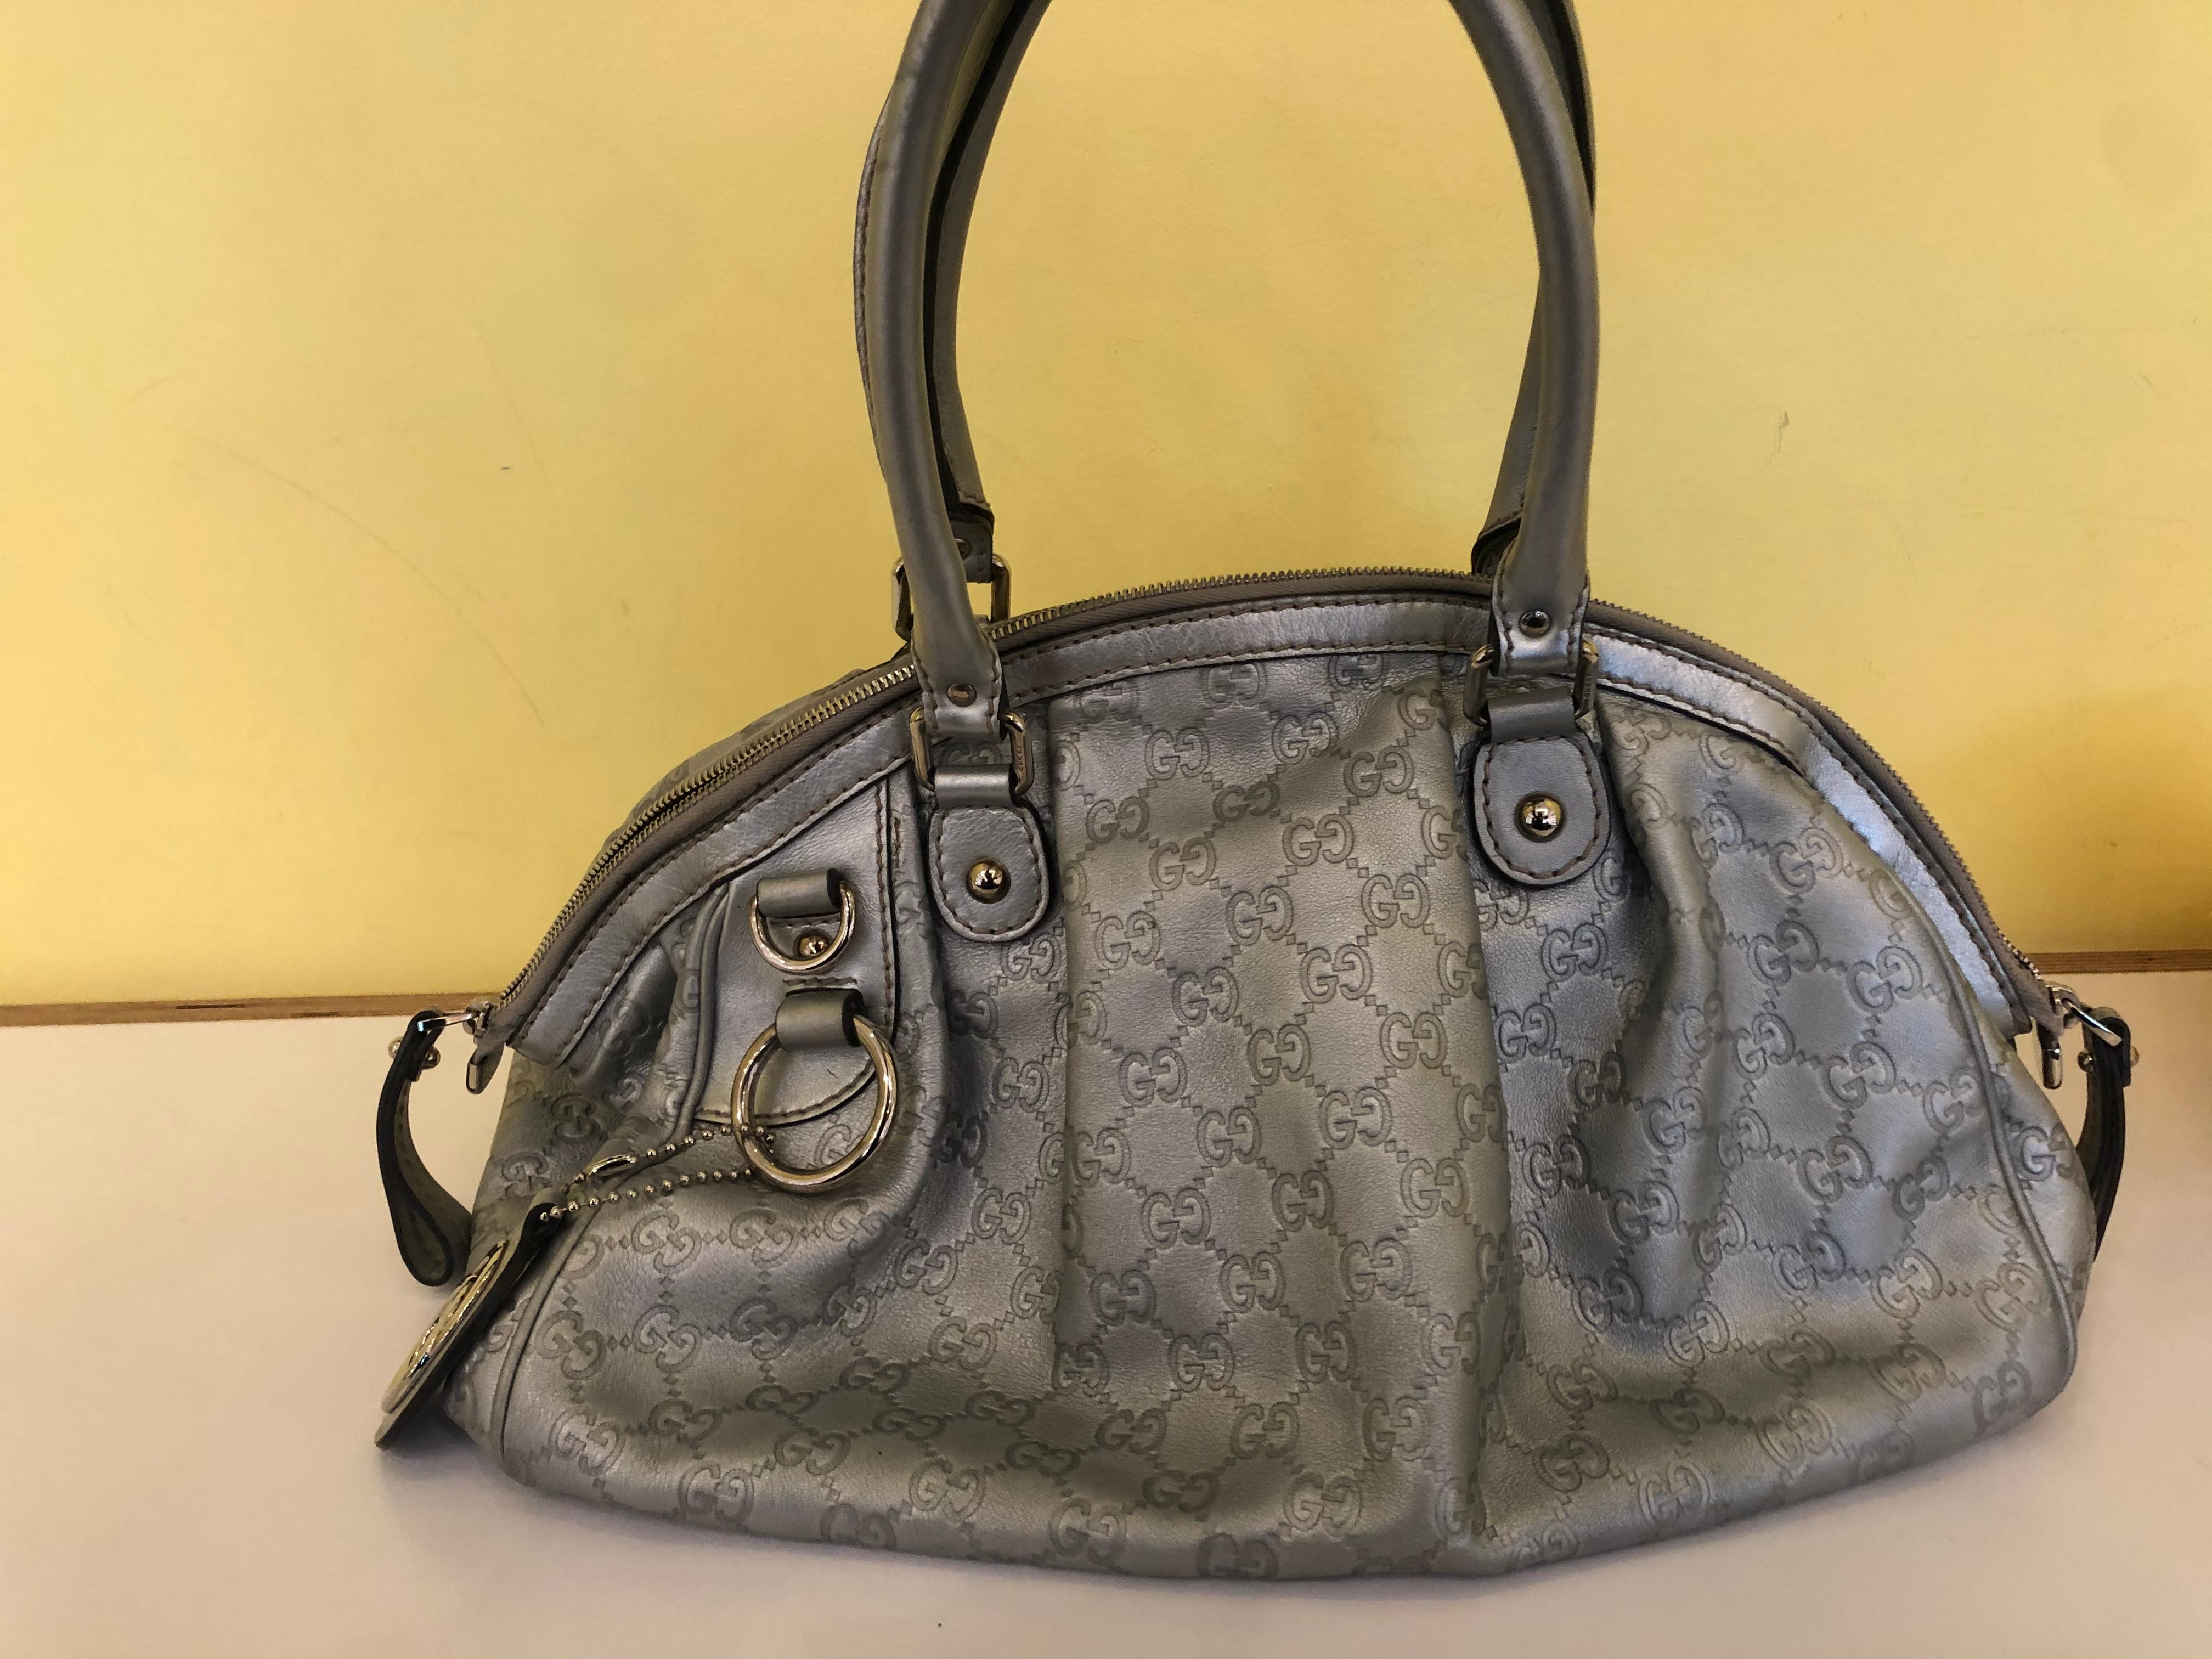 Gucci Sukey Convertible Boston Bag Guccissima Leather 6